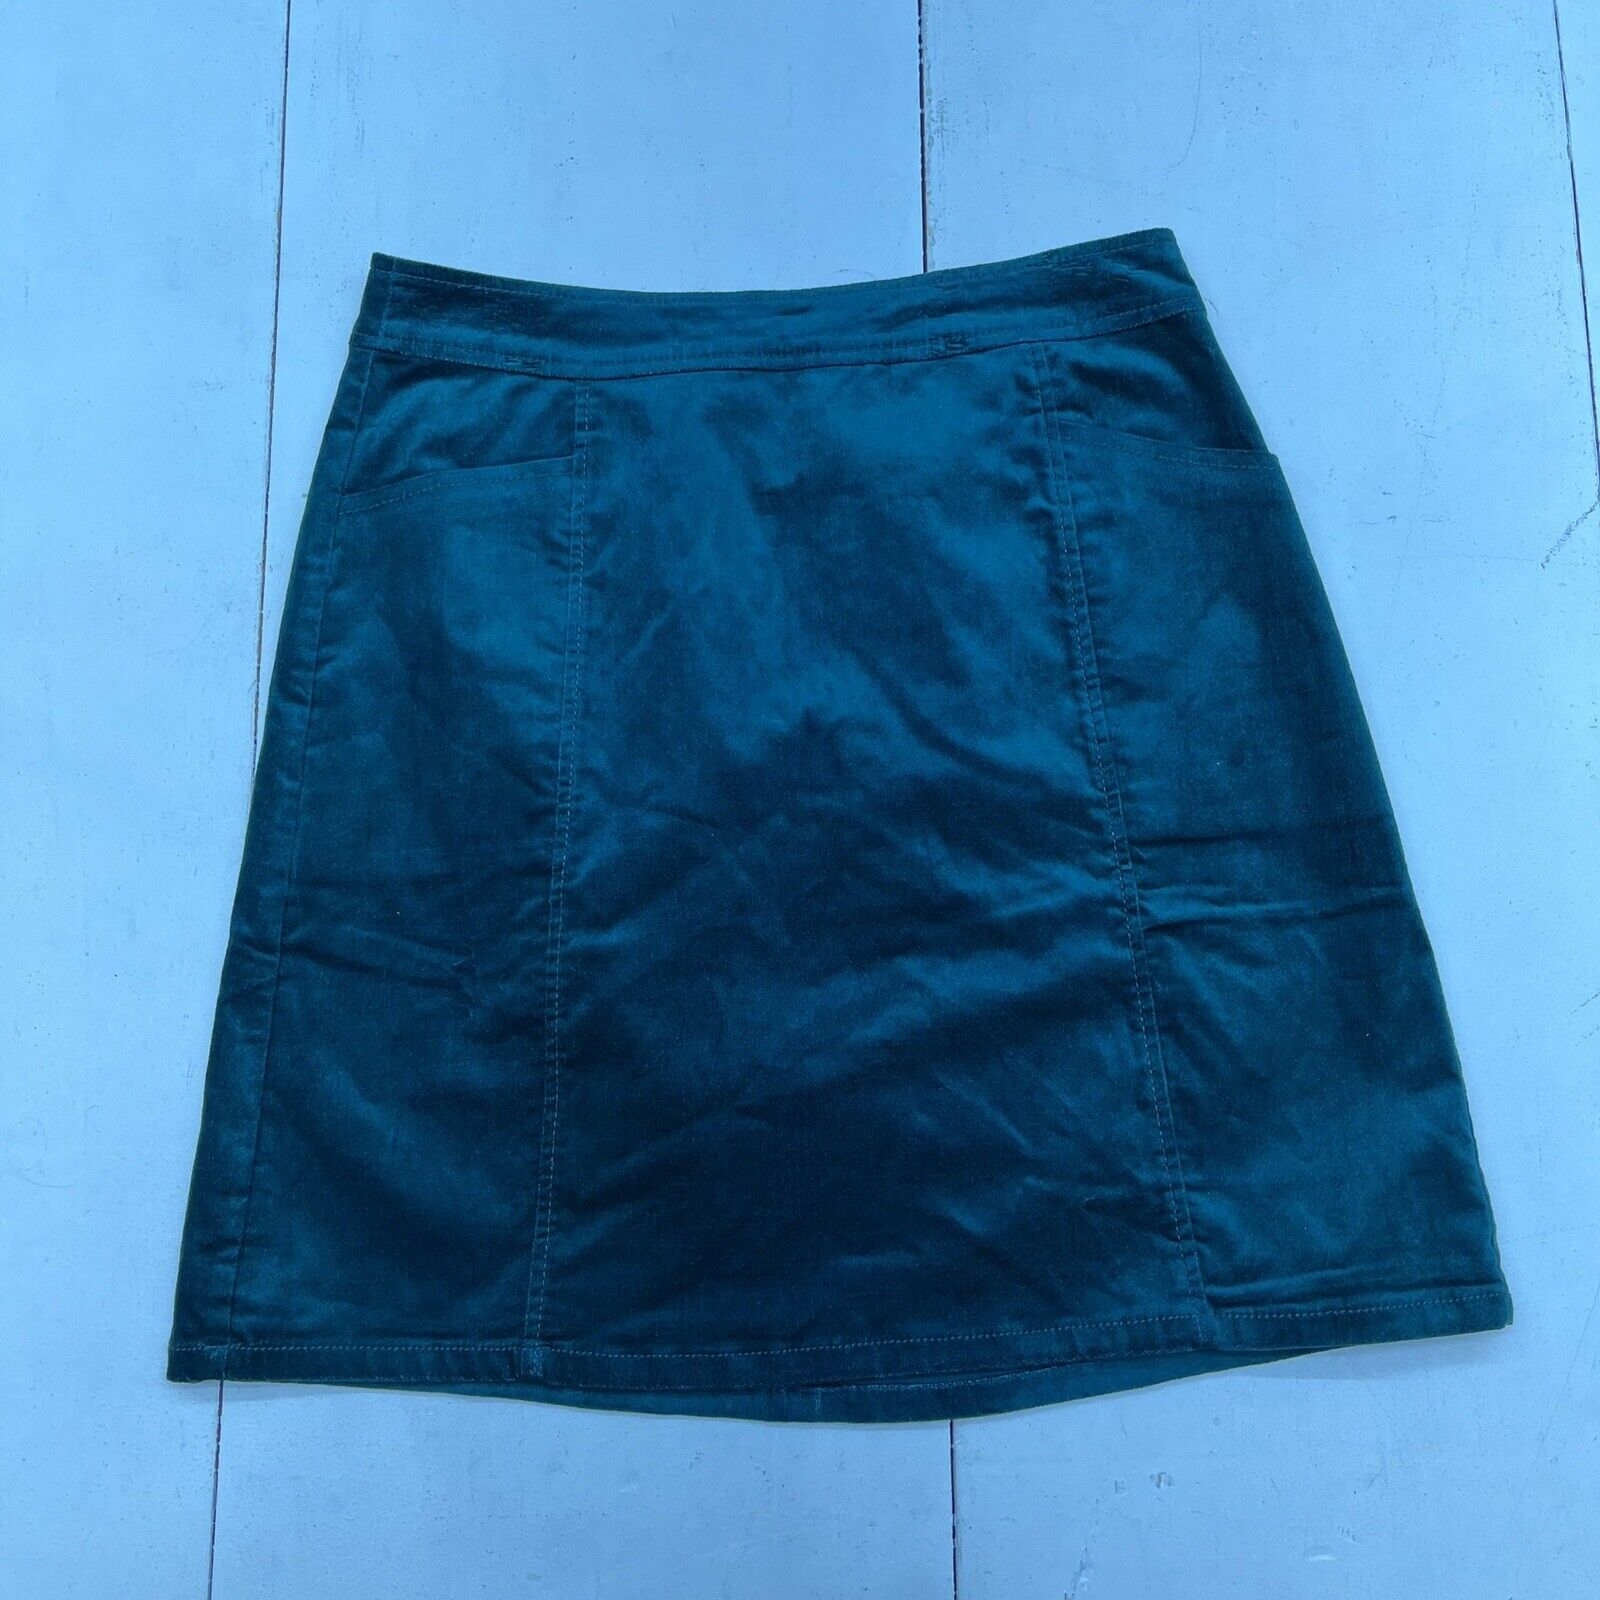 Loft Emerald Green Velvet Skirt With Pockets Women’s Size 0 NEW